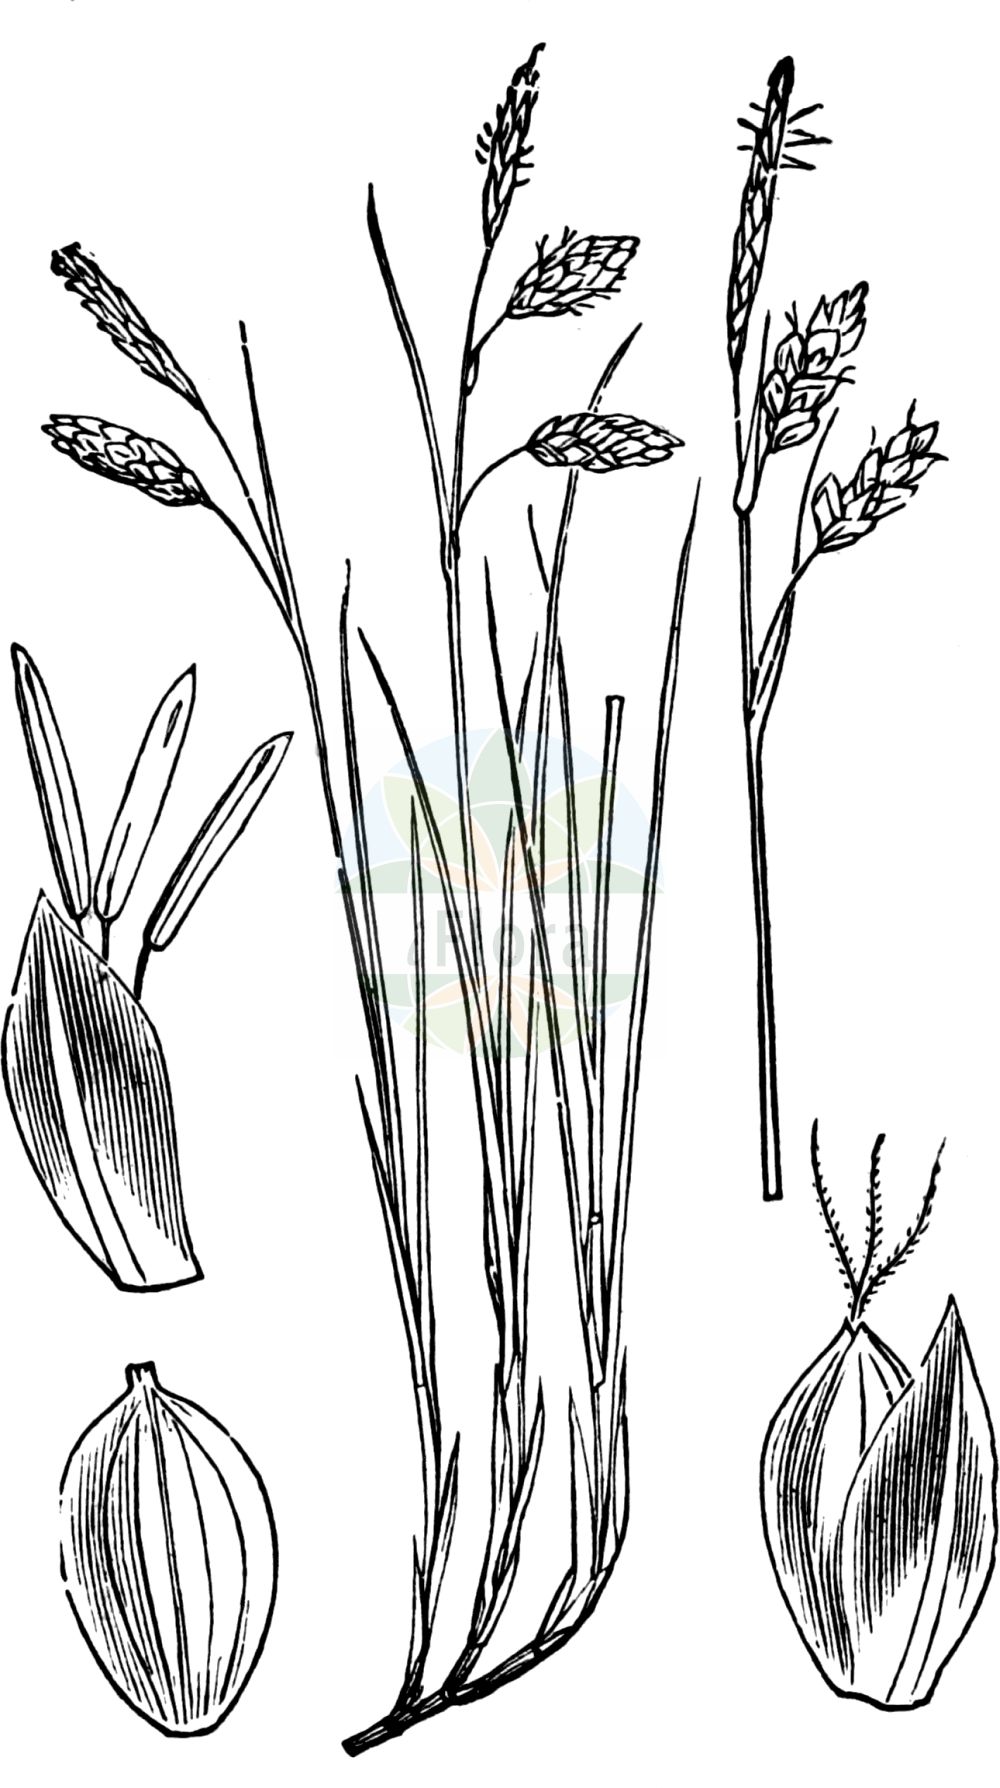 Historische Abbildung von Carex limosa (Schlamm-Segge - Bog-Sedge). Das Bild zeigt Blatt, Bluete, Frucht und Same. ---- Historical Drawing of Carex limosa (Schlamm-Segge - Bog-Sedge). The image is showing leaf, flower, fruit and seed.(Carex limosa,Schlamm-Segge,Bog-Sedge,Carex limosa,Schlamm-Segge,Bog-Sedge,Mud Sedge,Carex,Segge,Sedge,Cyperaceae,Sauergräser,Sedge family,Blatt,Bluete,Frucht,Same,leaf,flower,fruit,seed,Fitch et al. (1880))